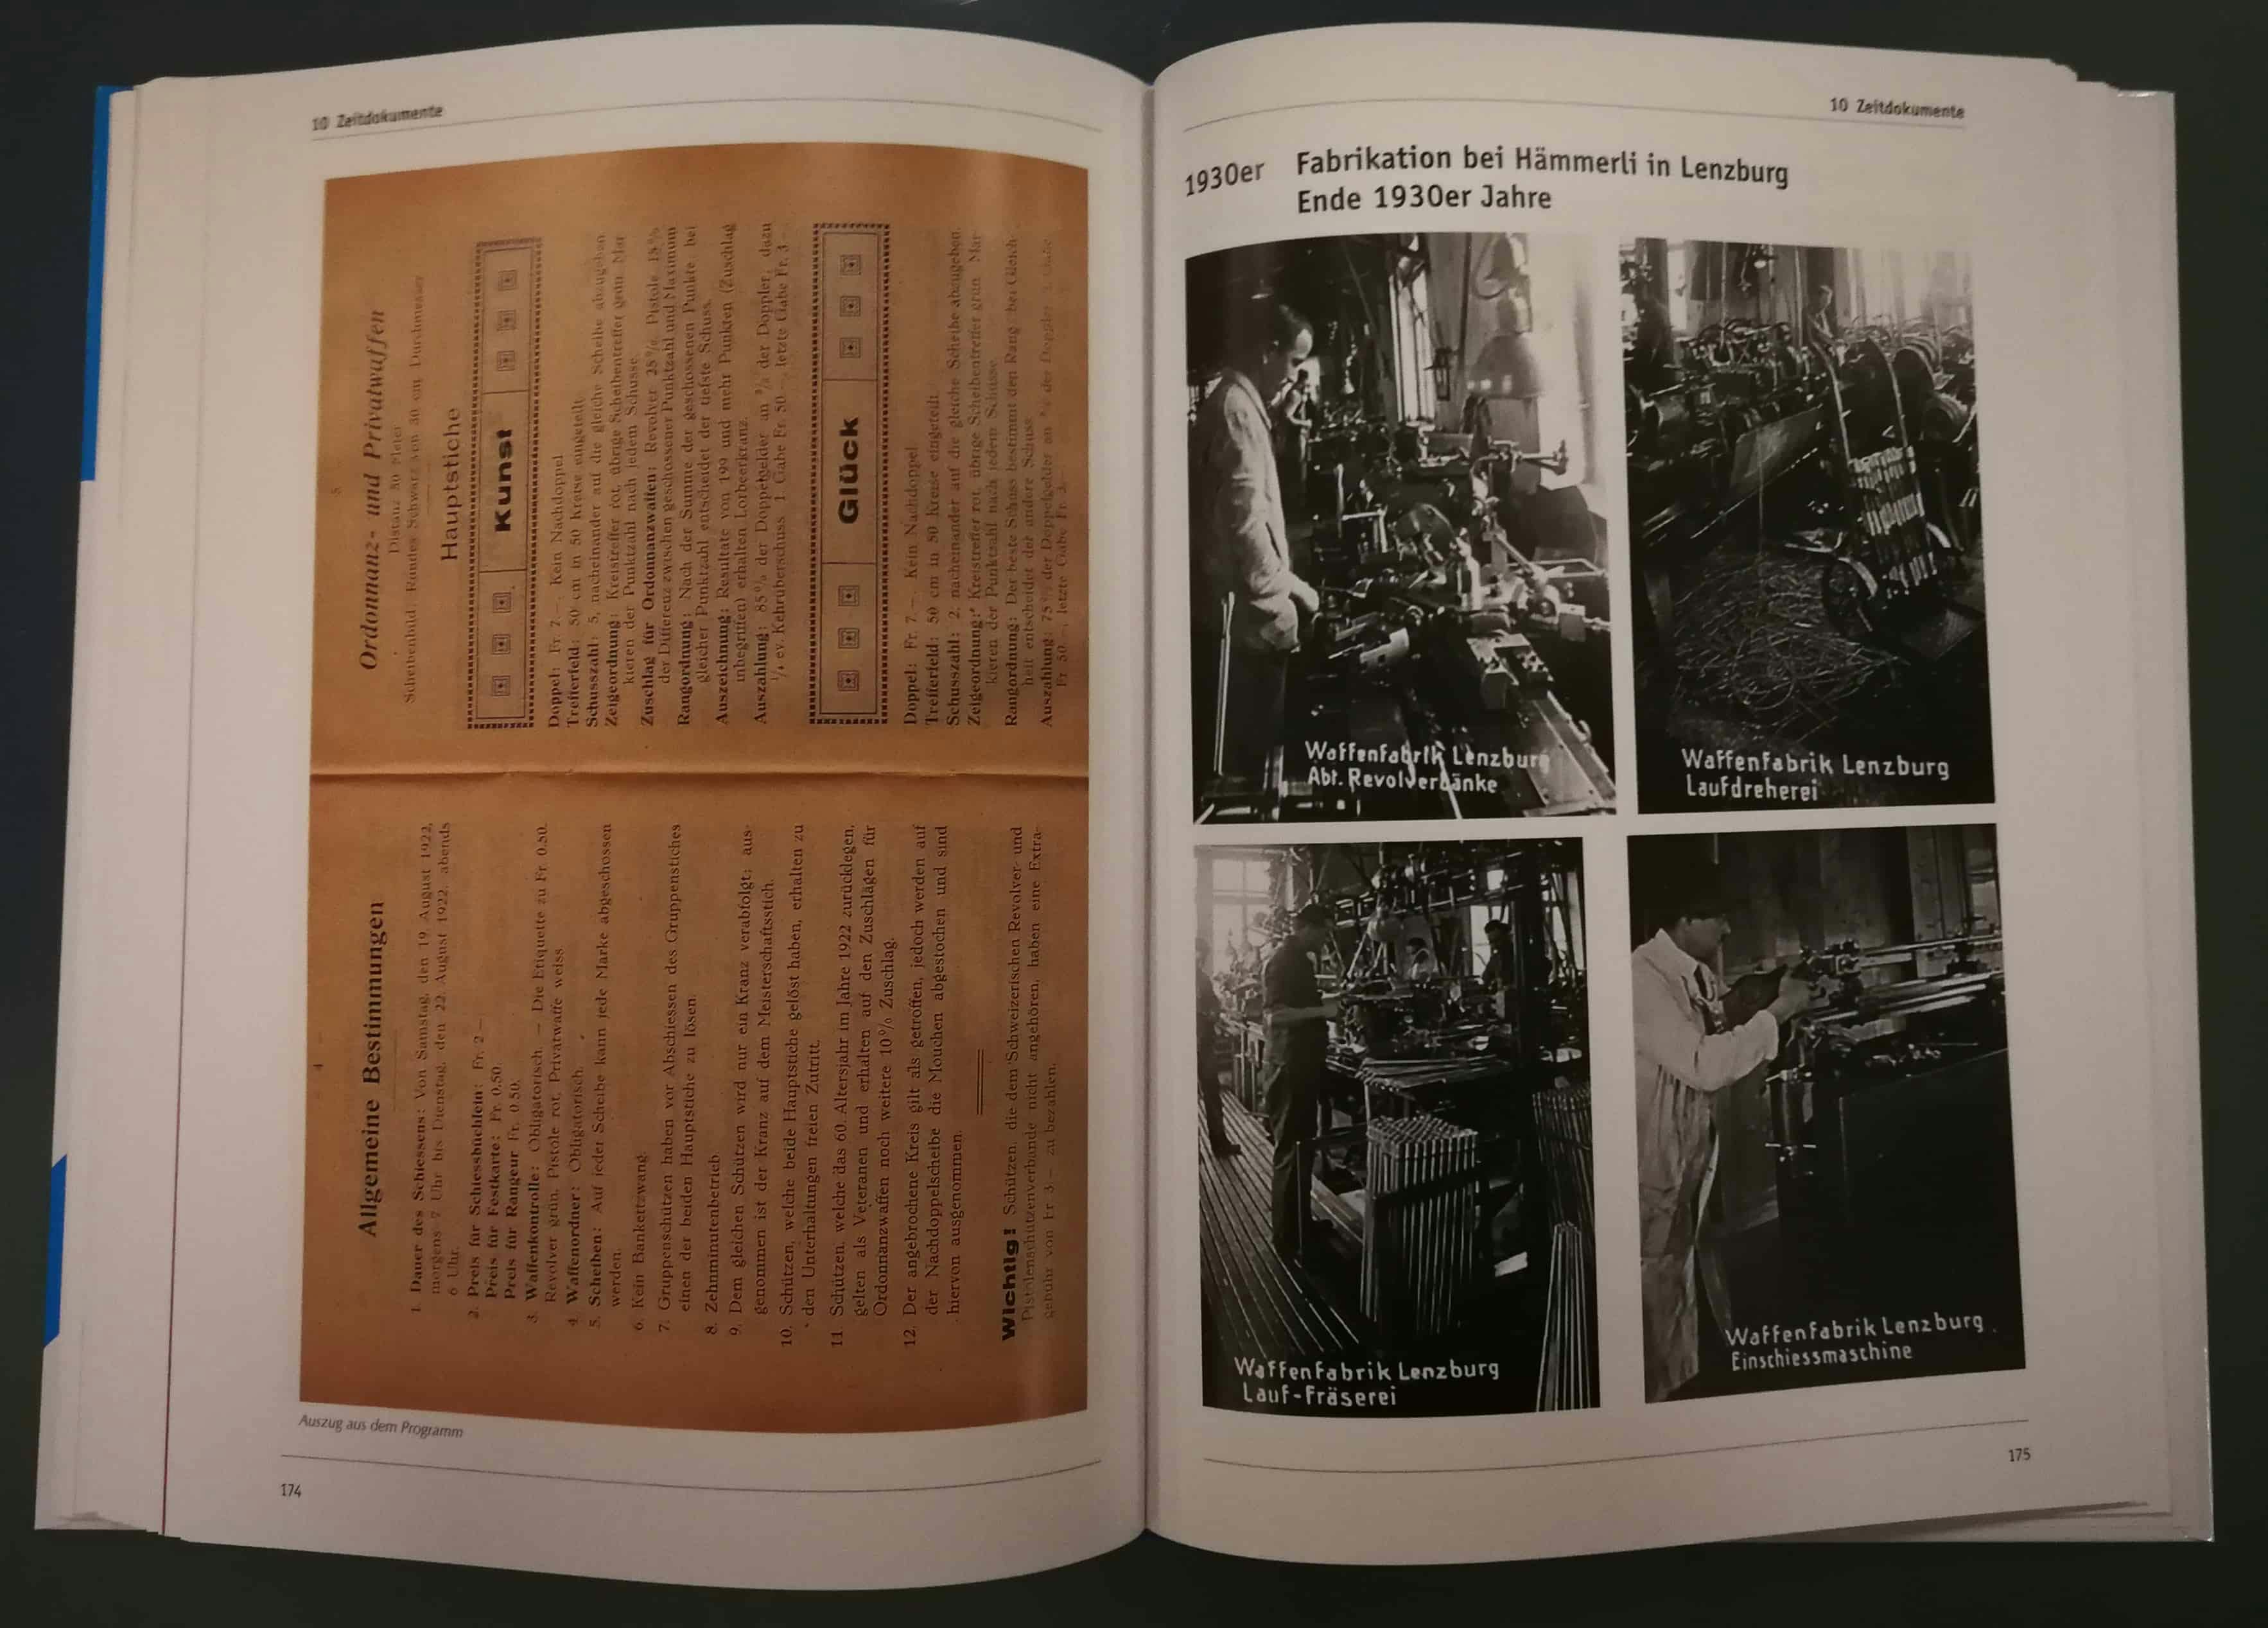 Links Stichprogramm vom Emmenthaler Revolver- und Pistolenschiessen in Biglen von 1922. Rechts Ausschnitte der Fabrikationsschritte.